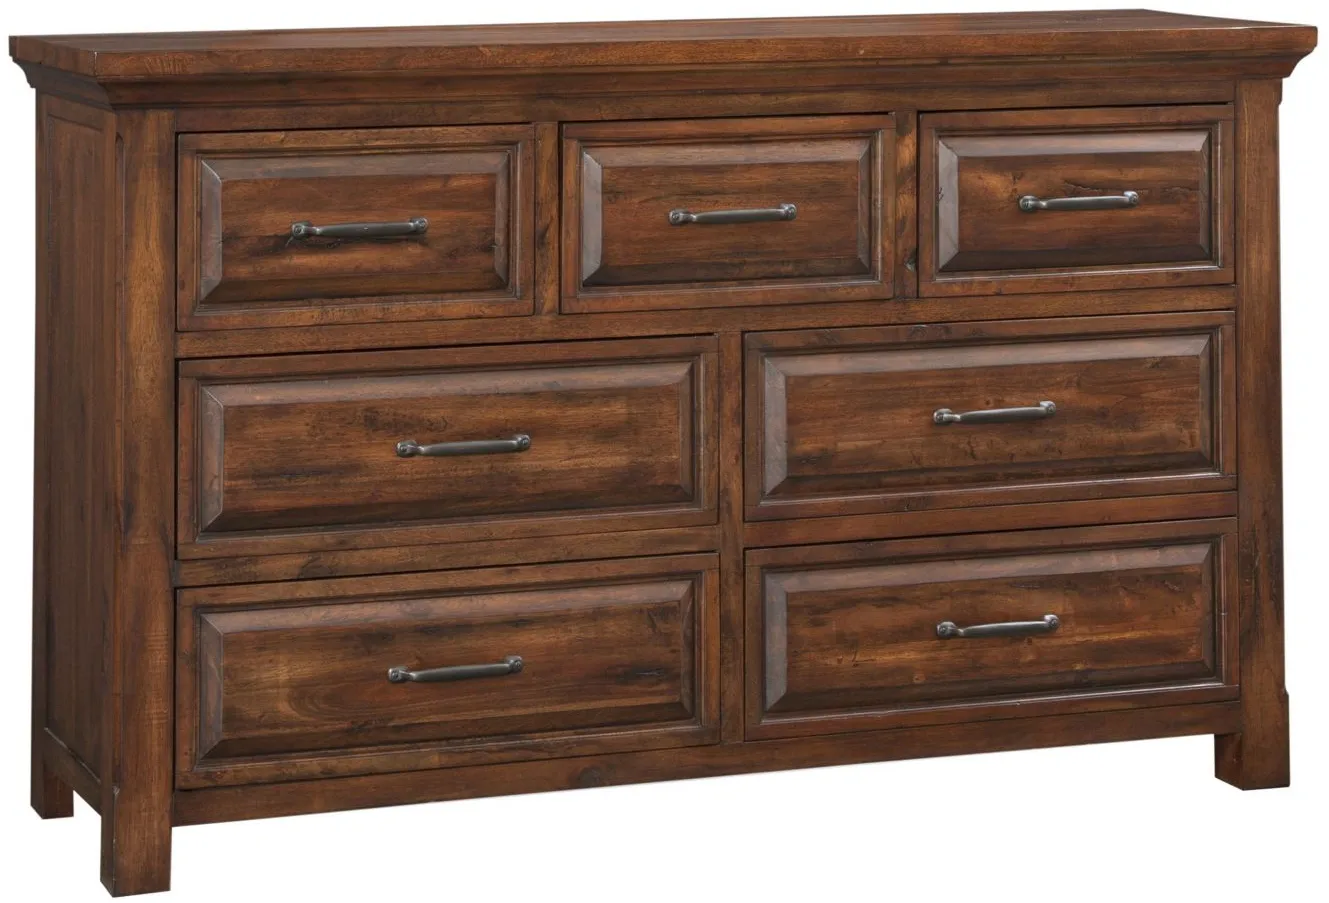 HillCrest Seven Drawer Dresser in Old Chestnut by Napa Furniture Design